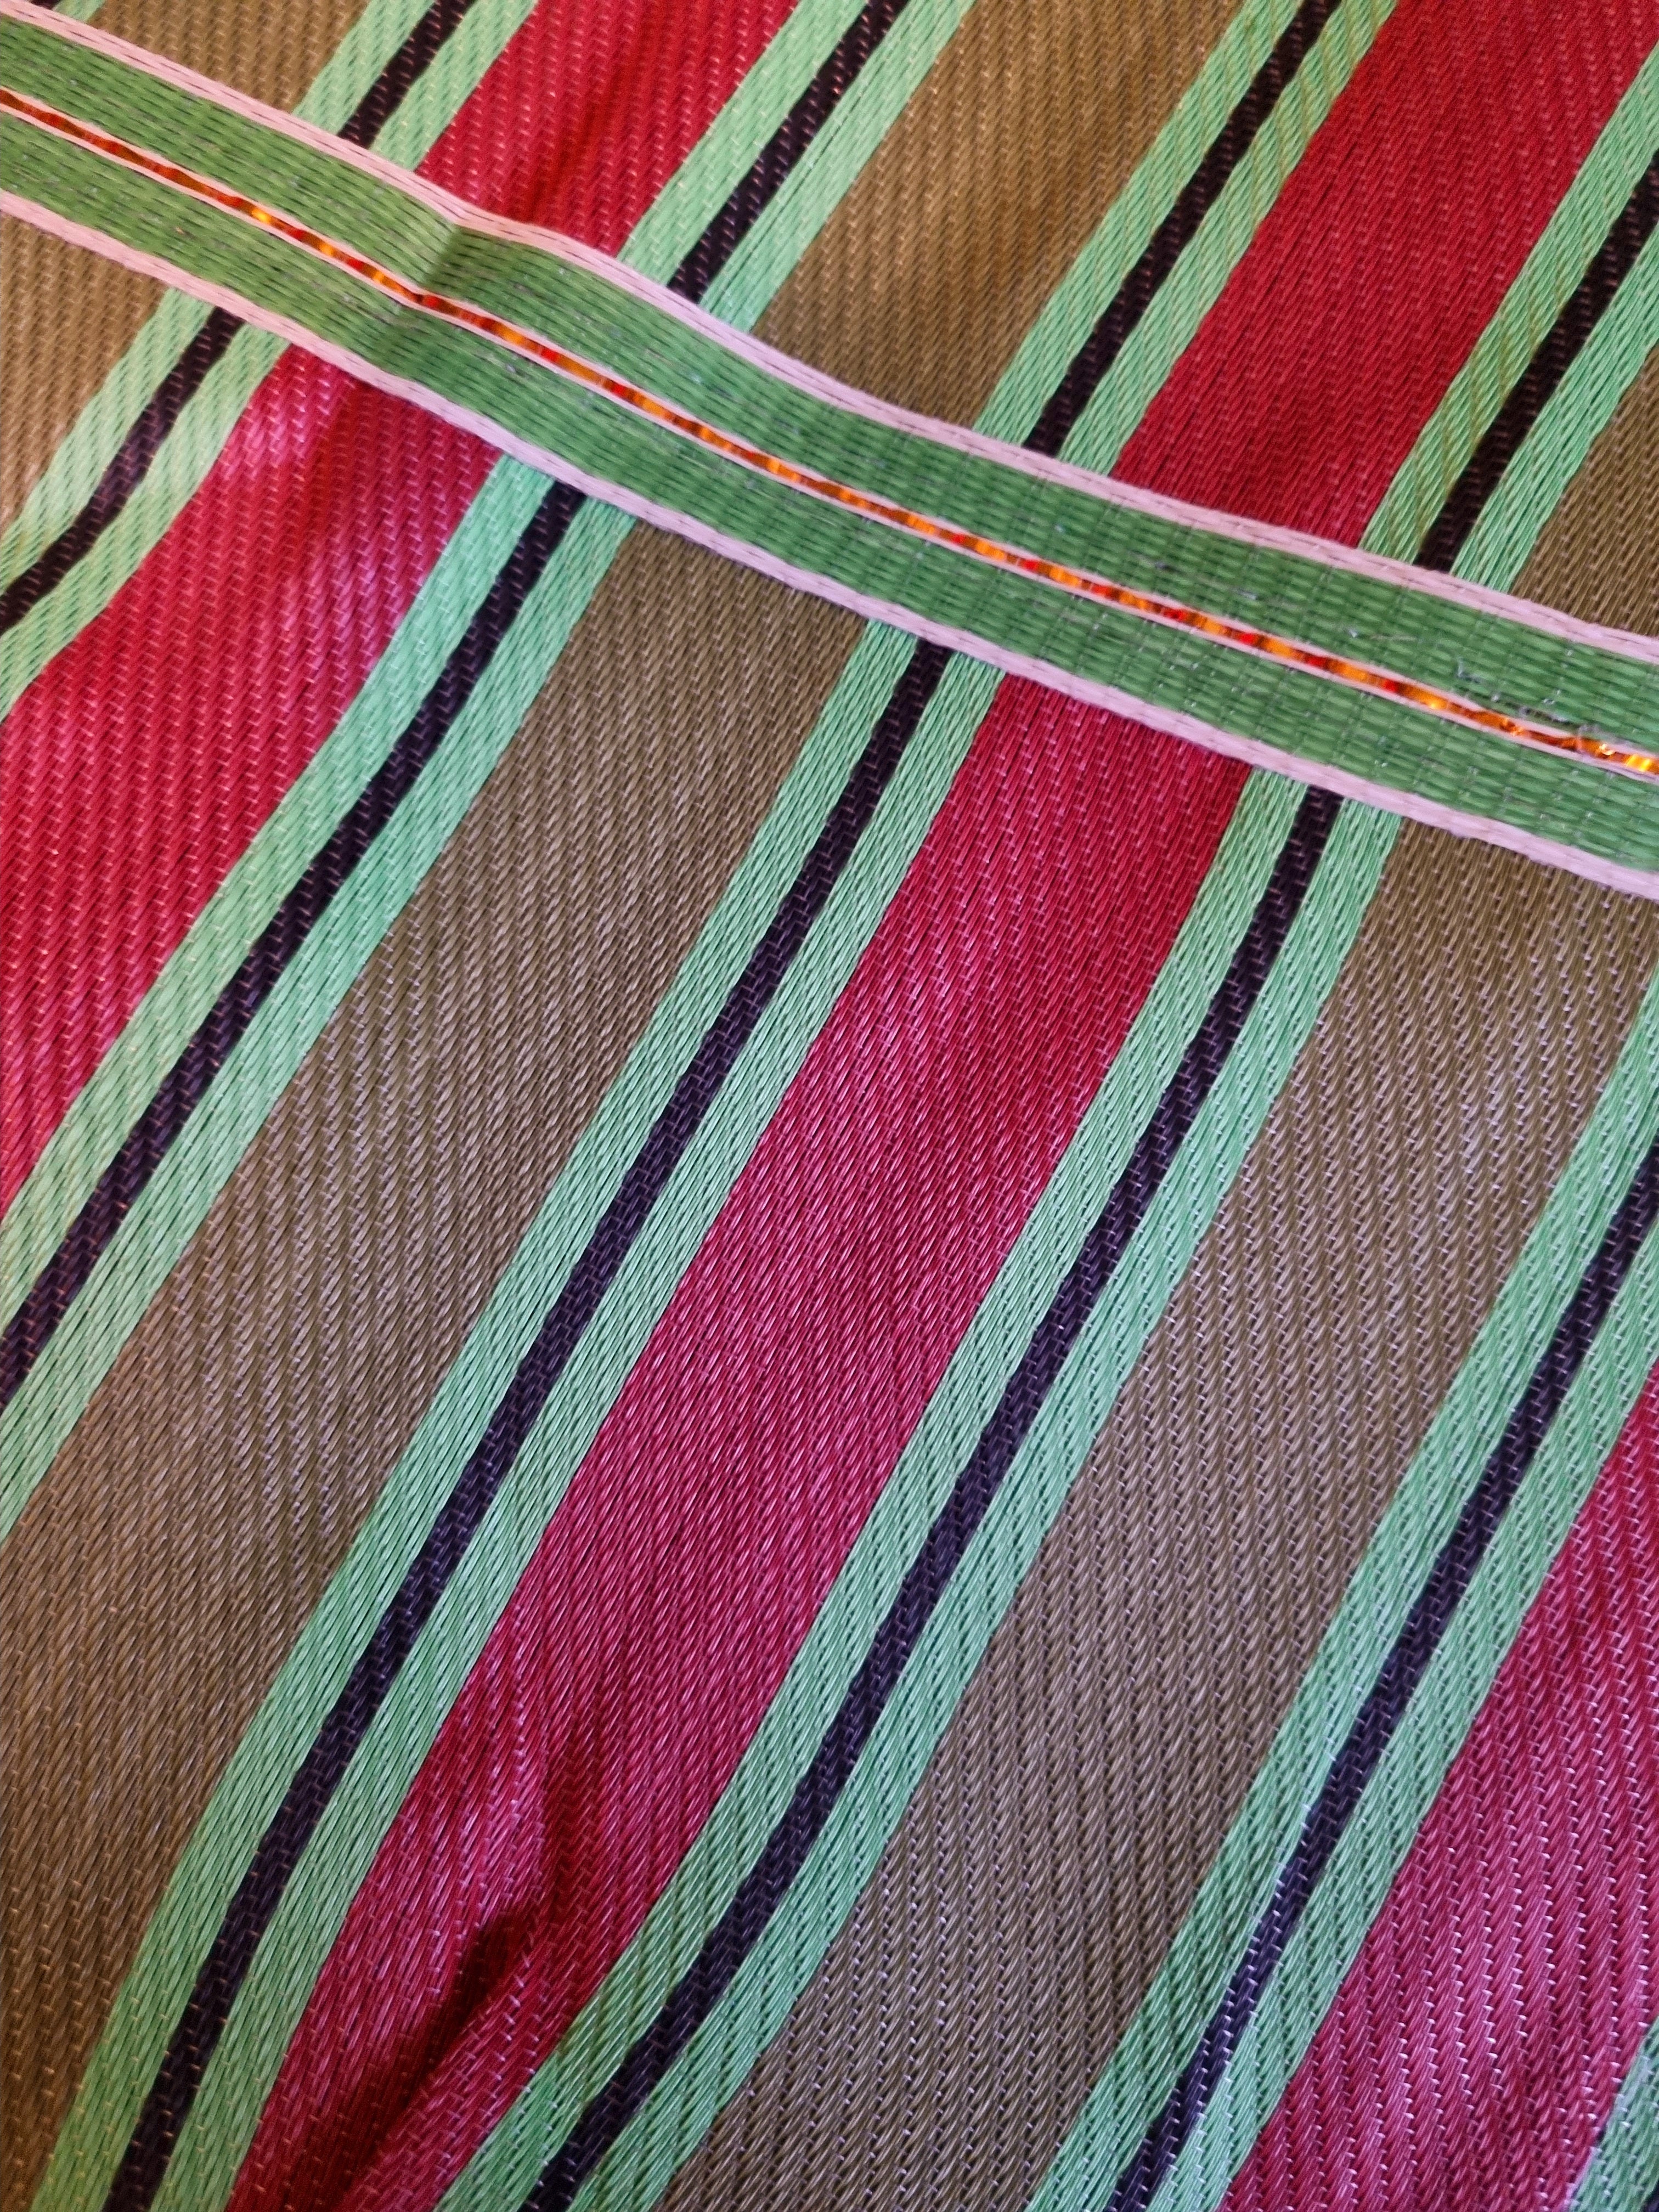 Super large striped zip Indian market bag.